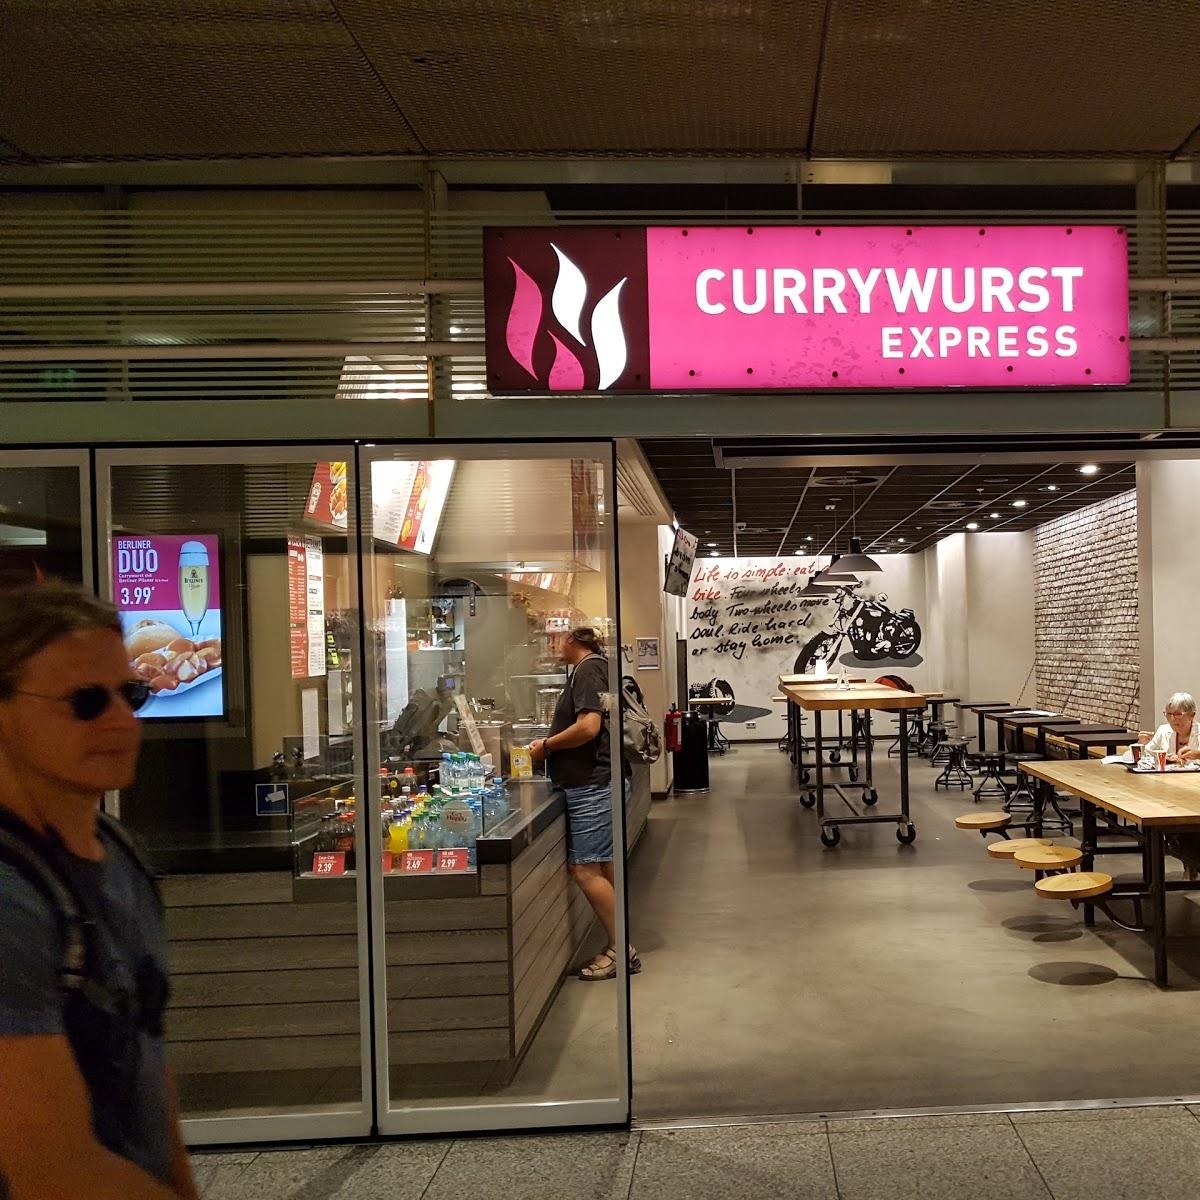 Restaurant "Currywurst Express" in Berlin